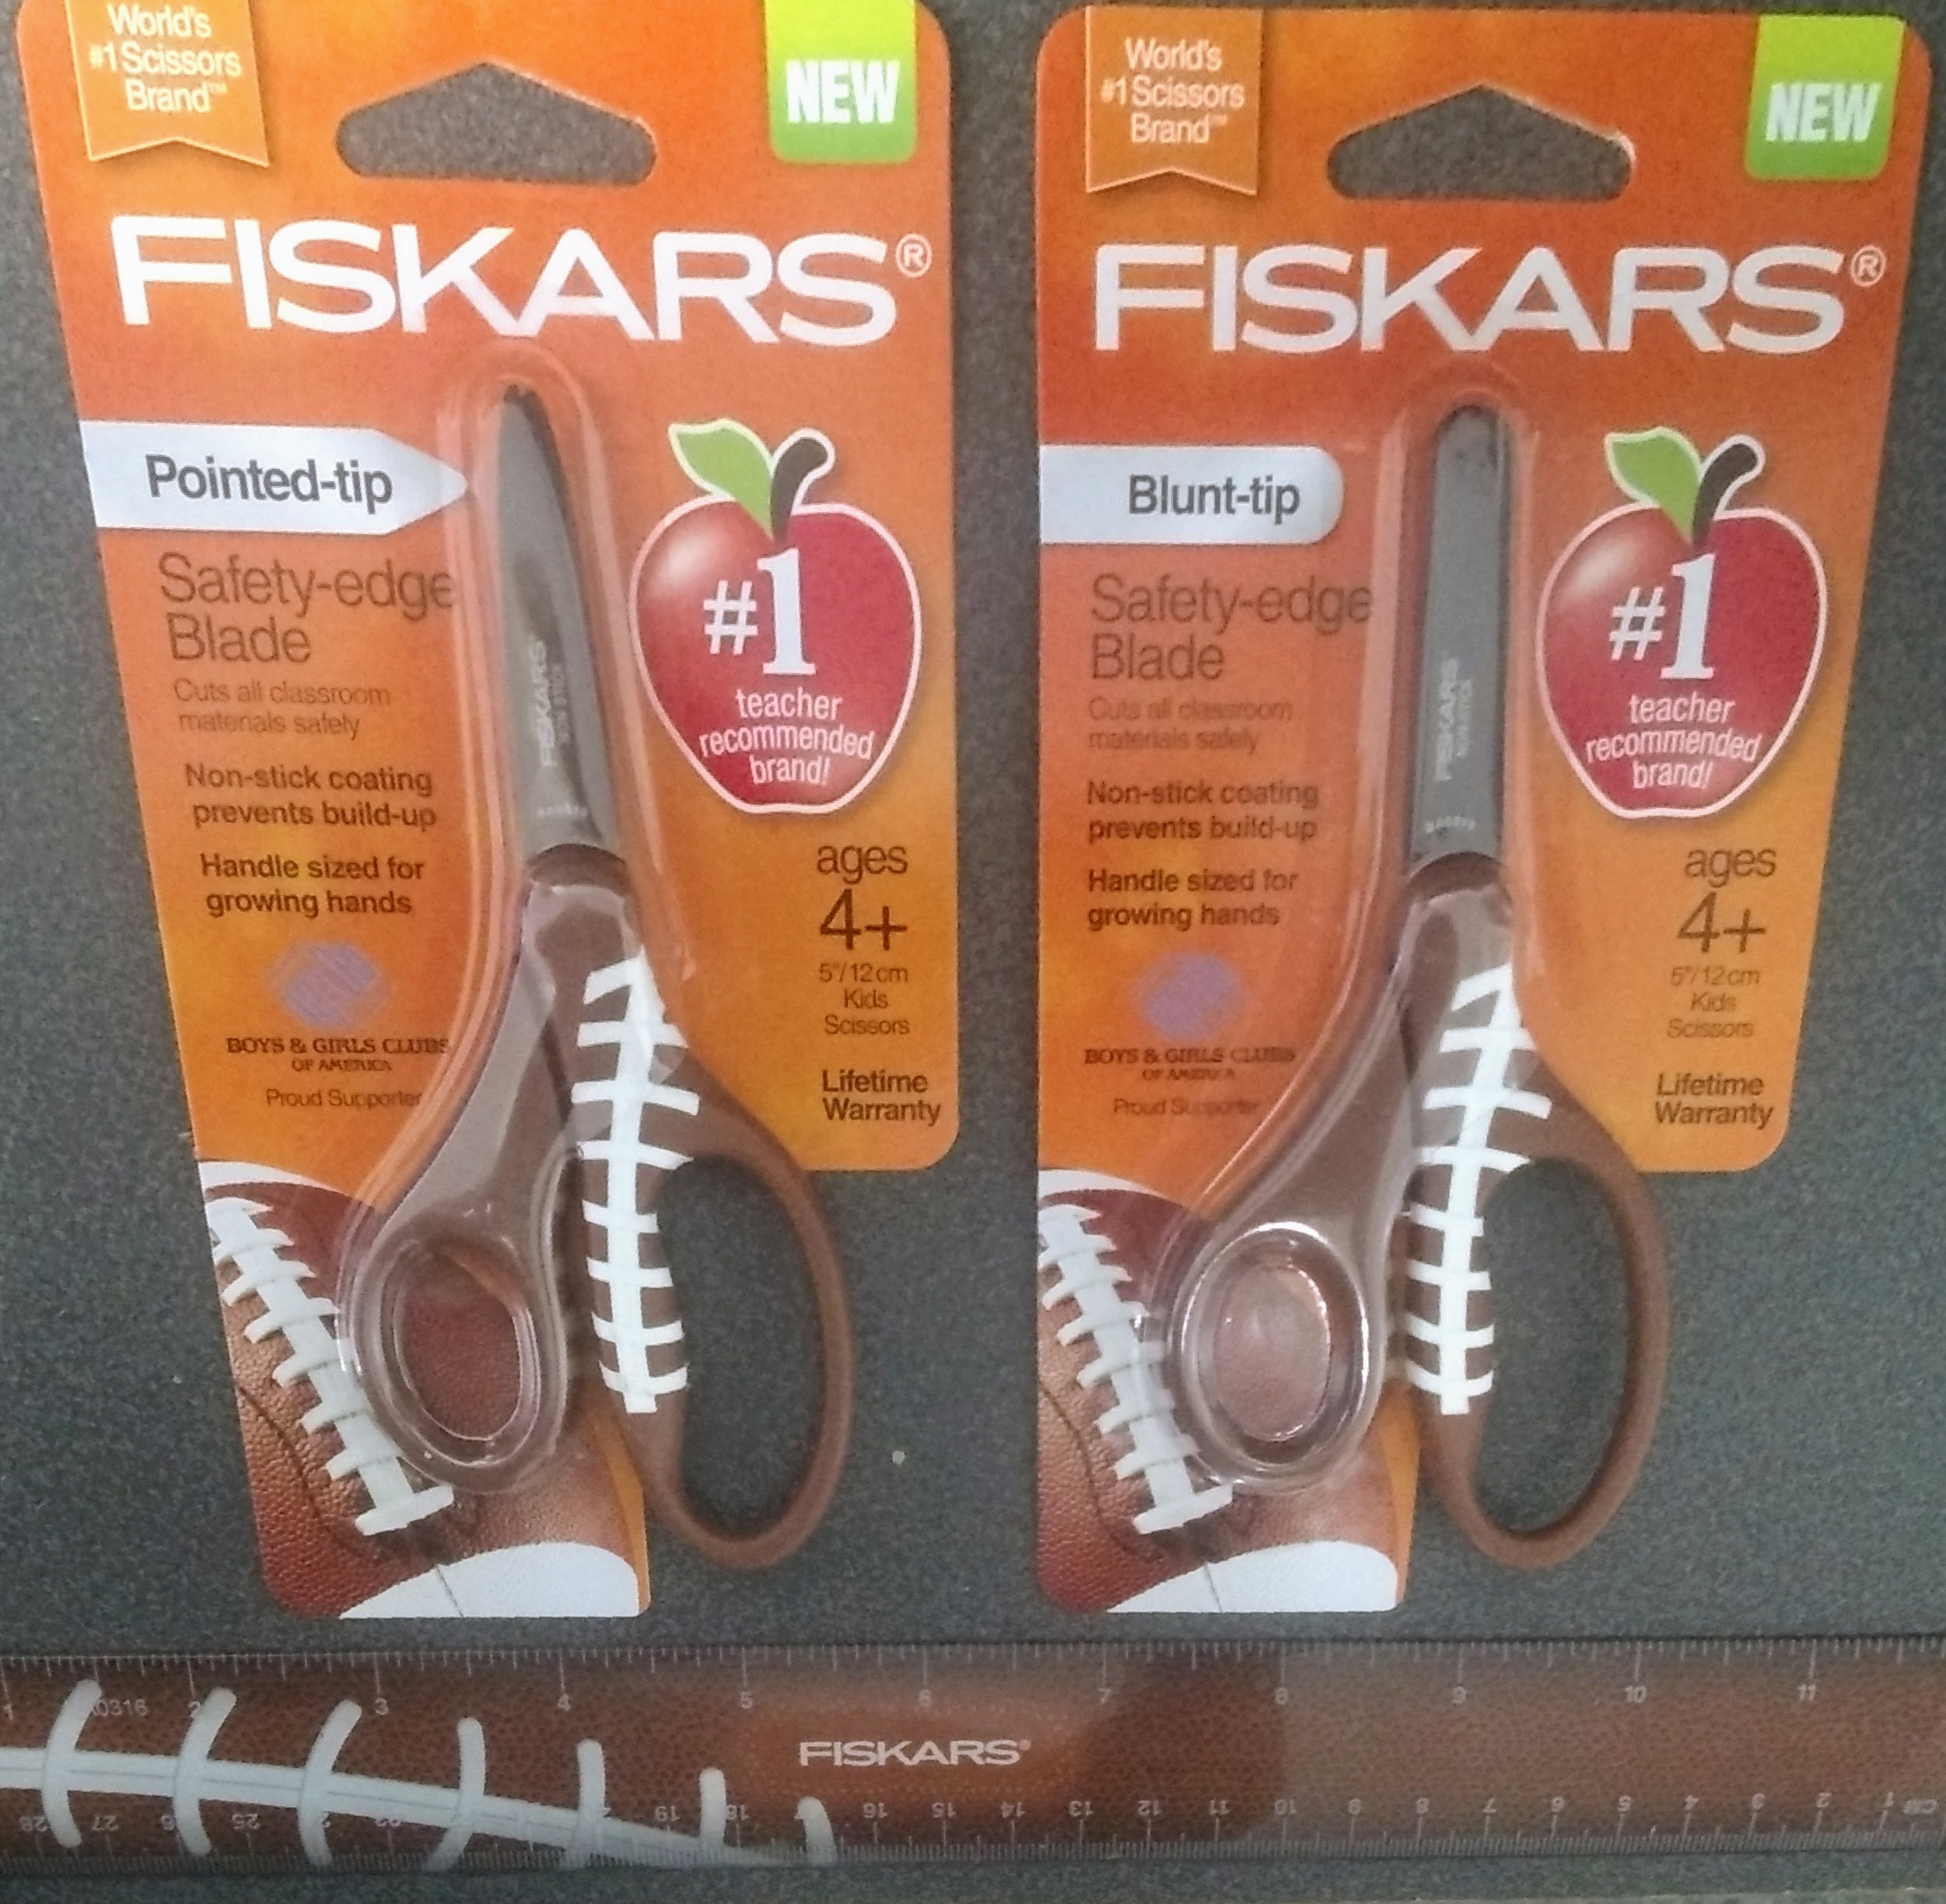 Fiskars MVP Non-stick Pointed-tip Kids Scissors (5 in.) - Basketball